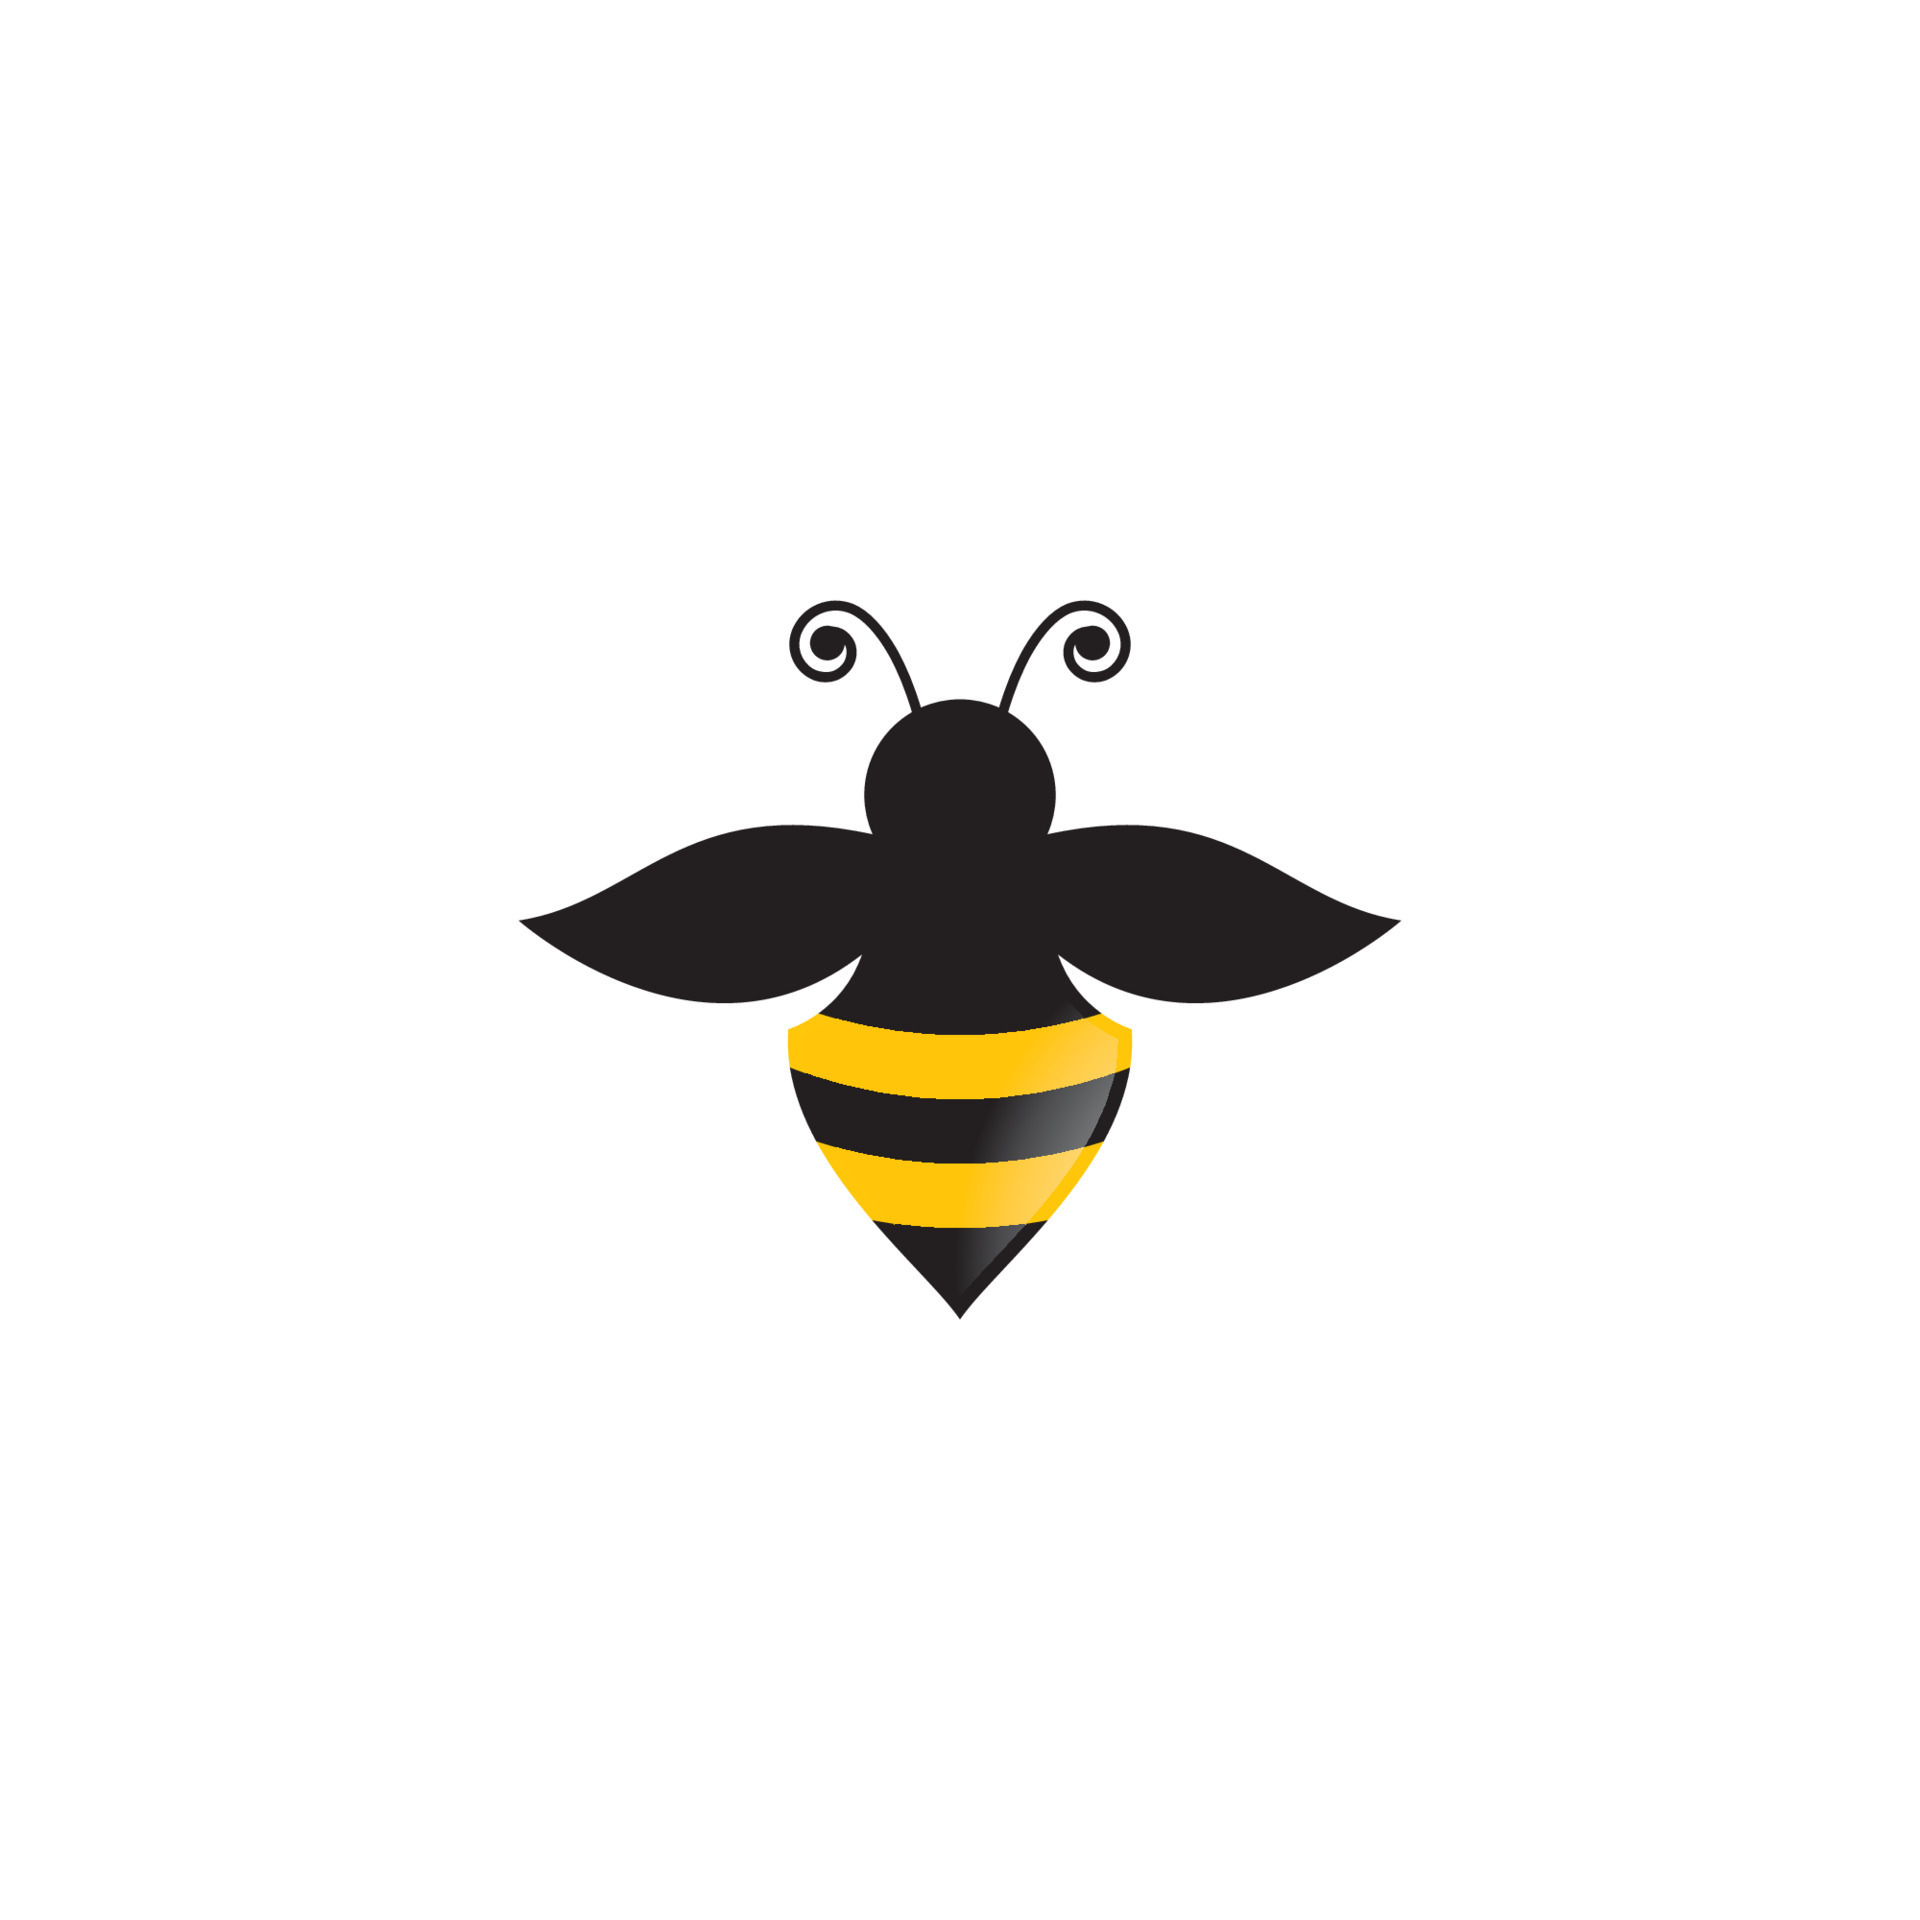 Bee logo images 14422536 Vector Art at Vecteezy